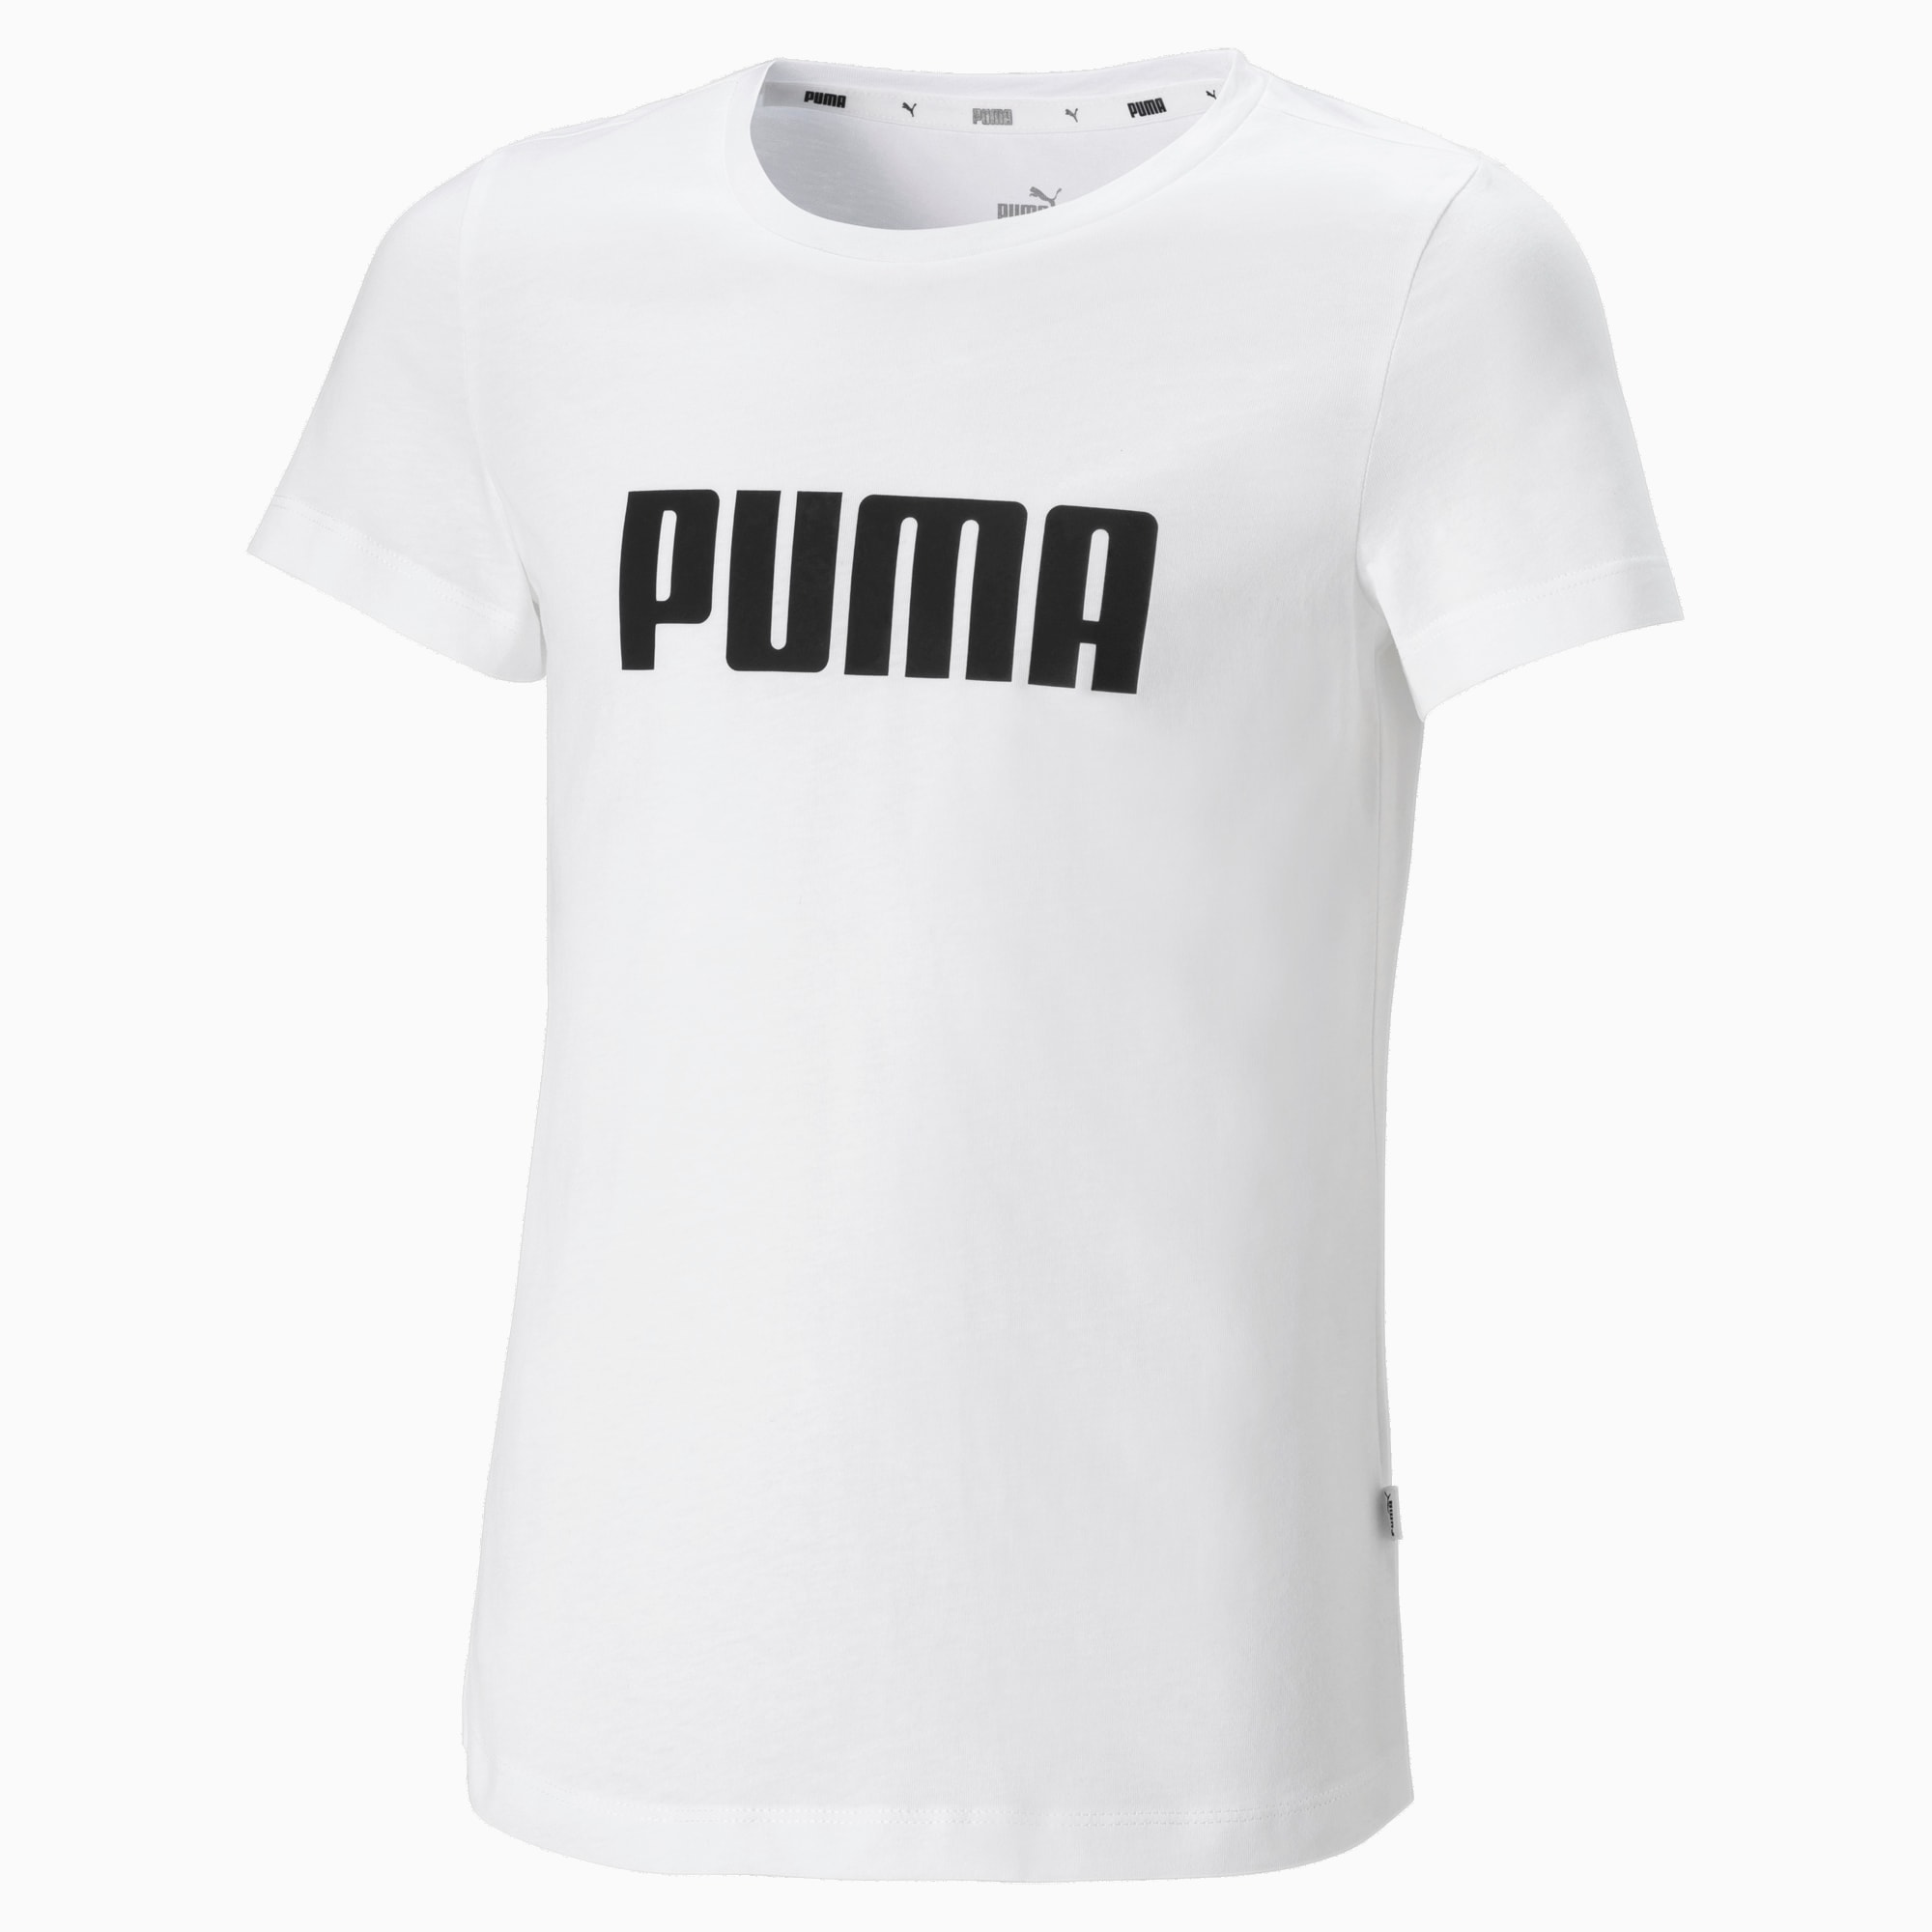 duma puma shirt